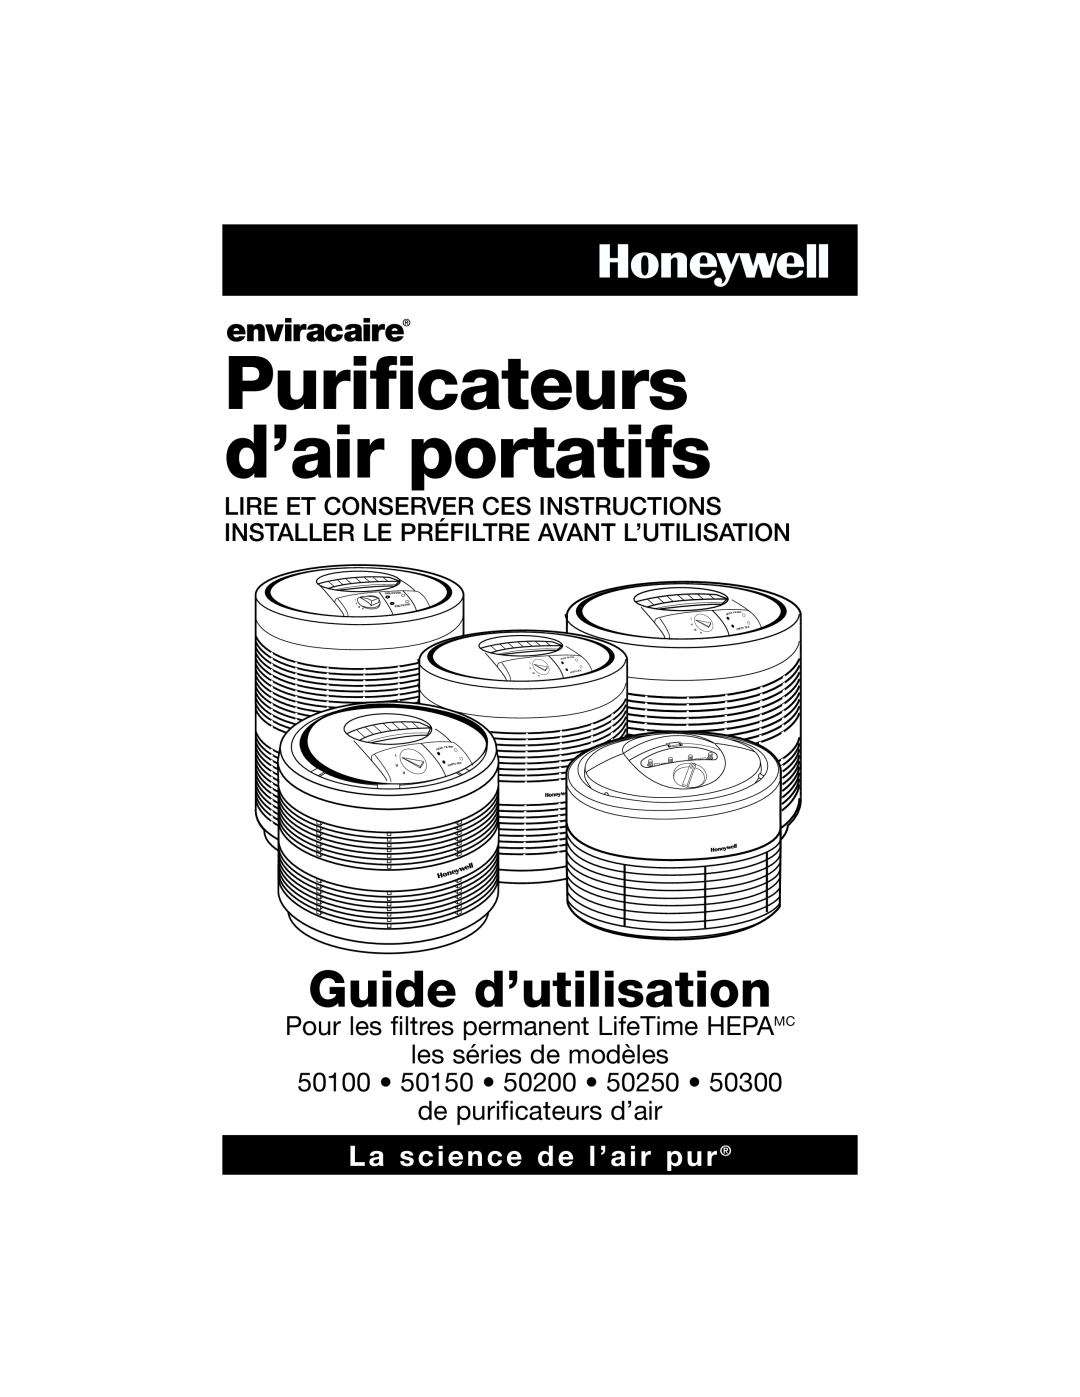 Honeywell 50250 Guide d’utilisation, La science de l’air pur, Pour les filtres permanent LifeTime HEPAMC, 50100 50150, I 